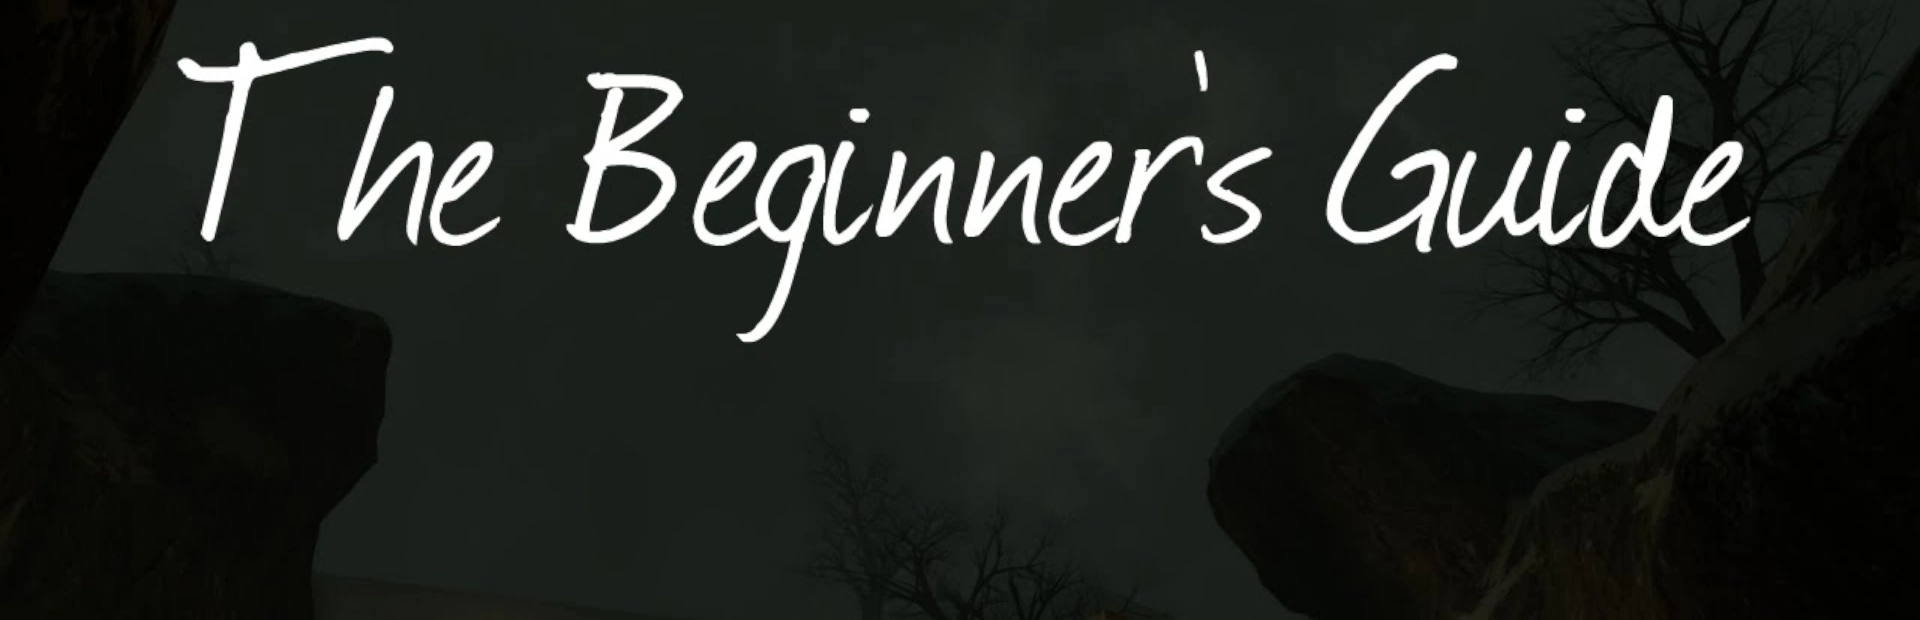 دانلود بازی The Beginner's Guide برای کامپیوتر | گیمباتو